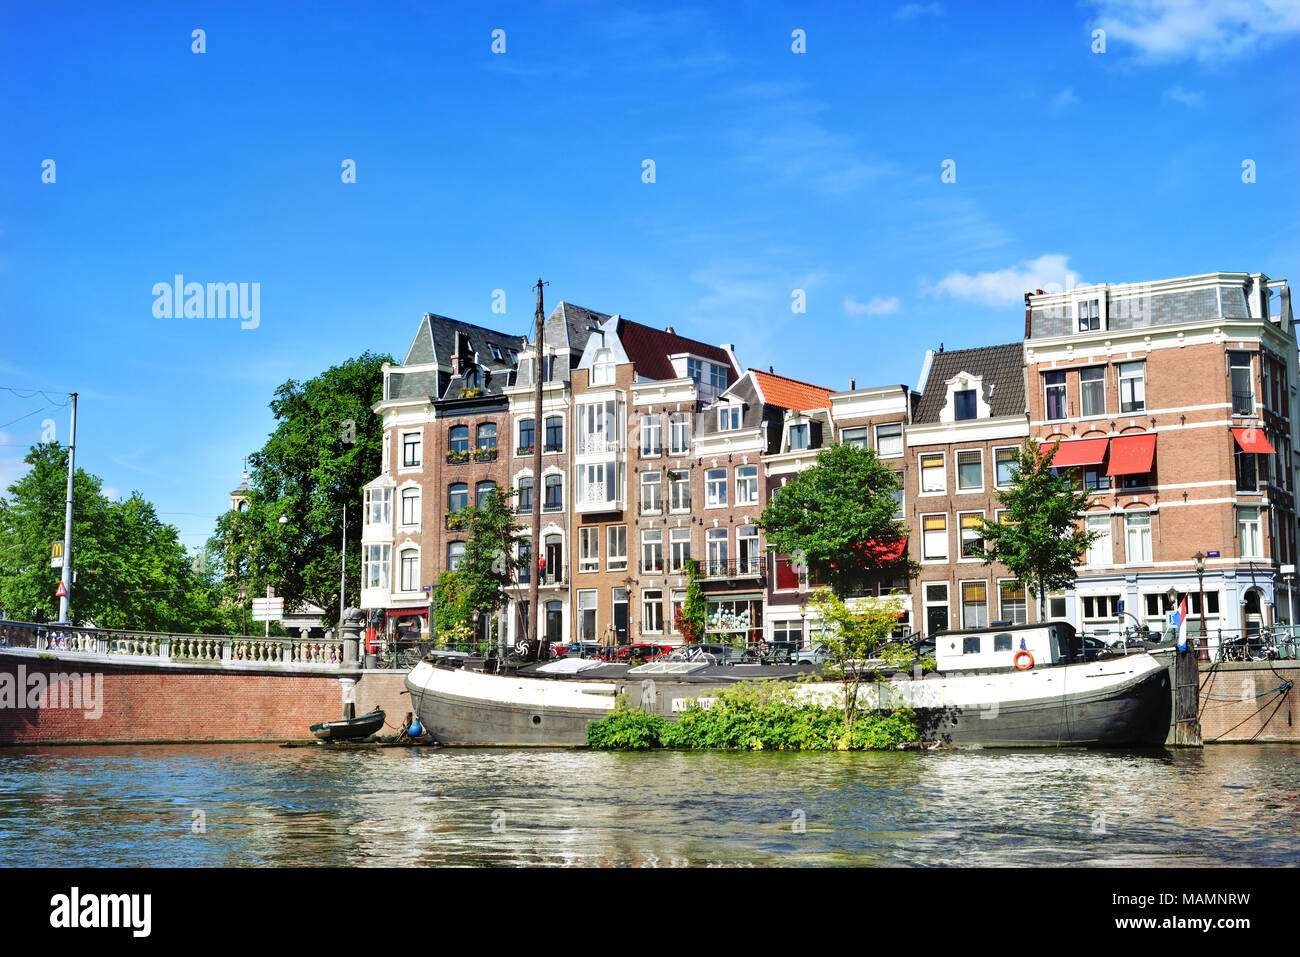 Canal ou gracht à Amsterdam City. Scène de rivière Amstel avec des bateaux et des maisons anciennes. Banque D'Images